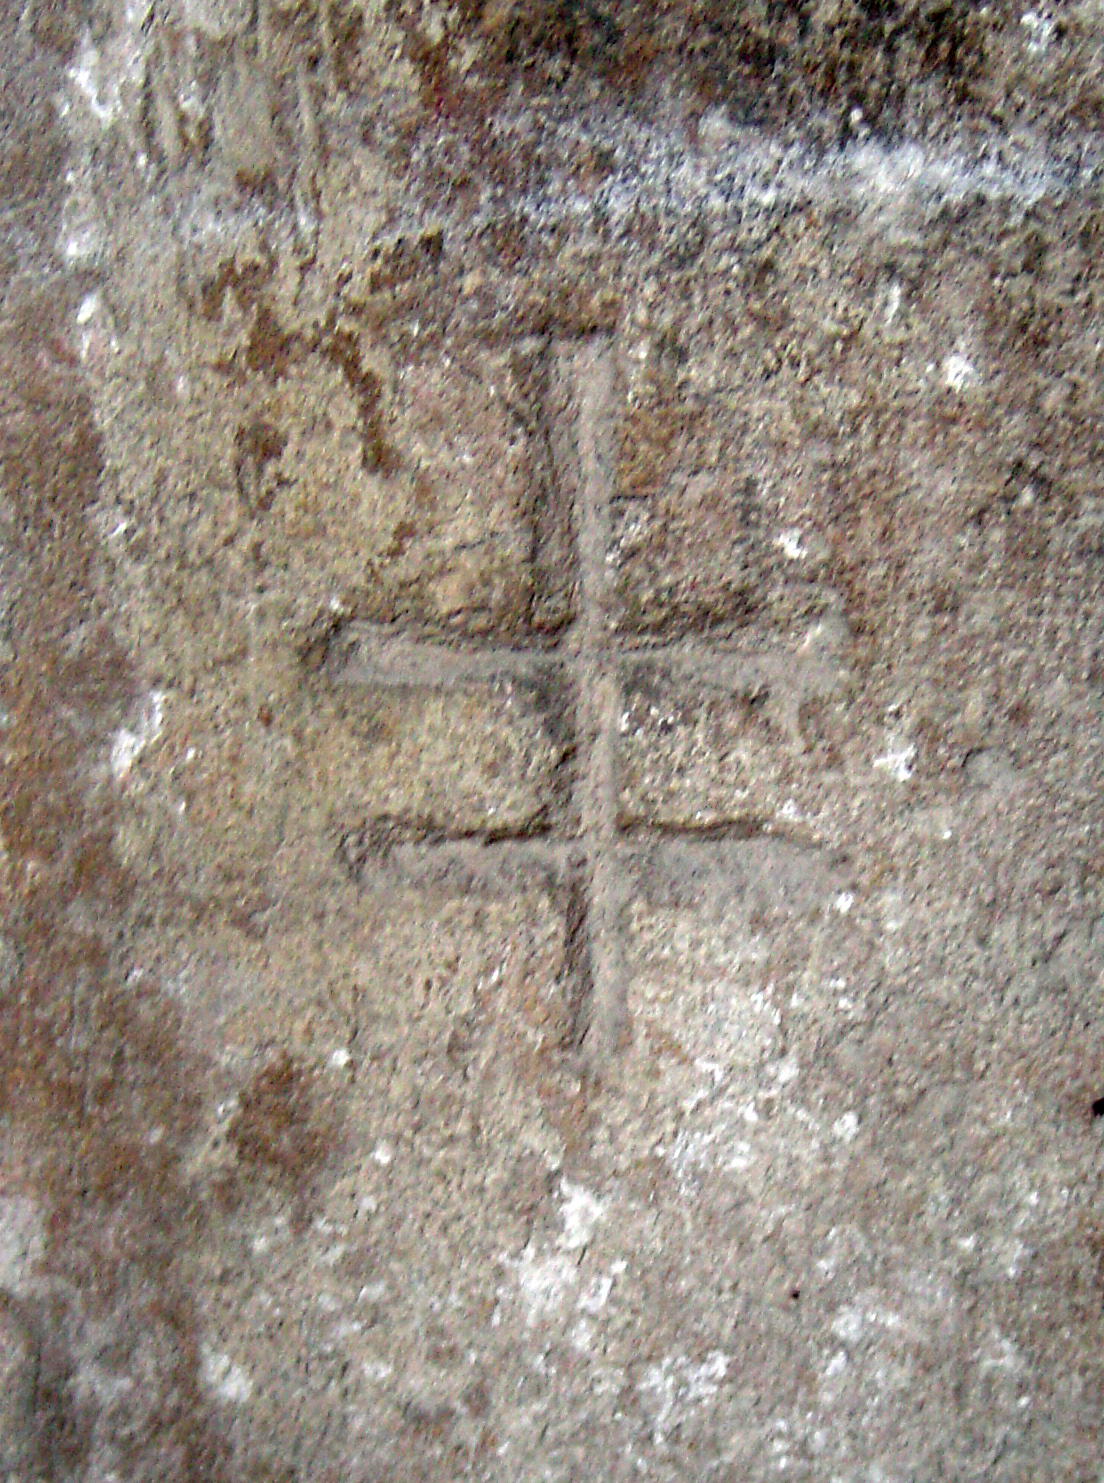 12.07.2008 Creu de dos braços observada al claustre de St. Nasari de Besiers. En aquesta banda dels Pirineus se la coneix amb el nom de la creu de Lorena.  Claustre de St. Nasari. Besiers -  Jordi Bibià